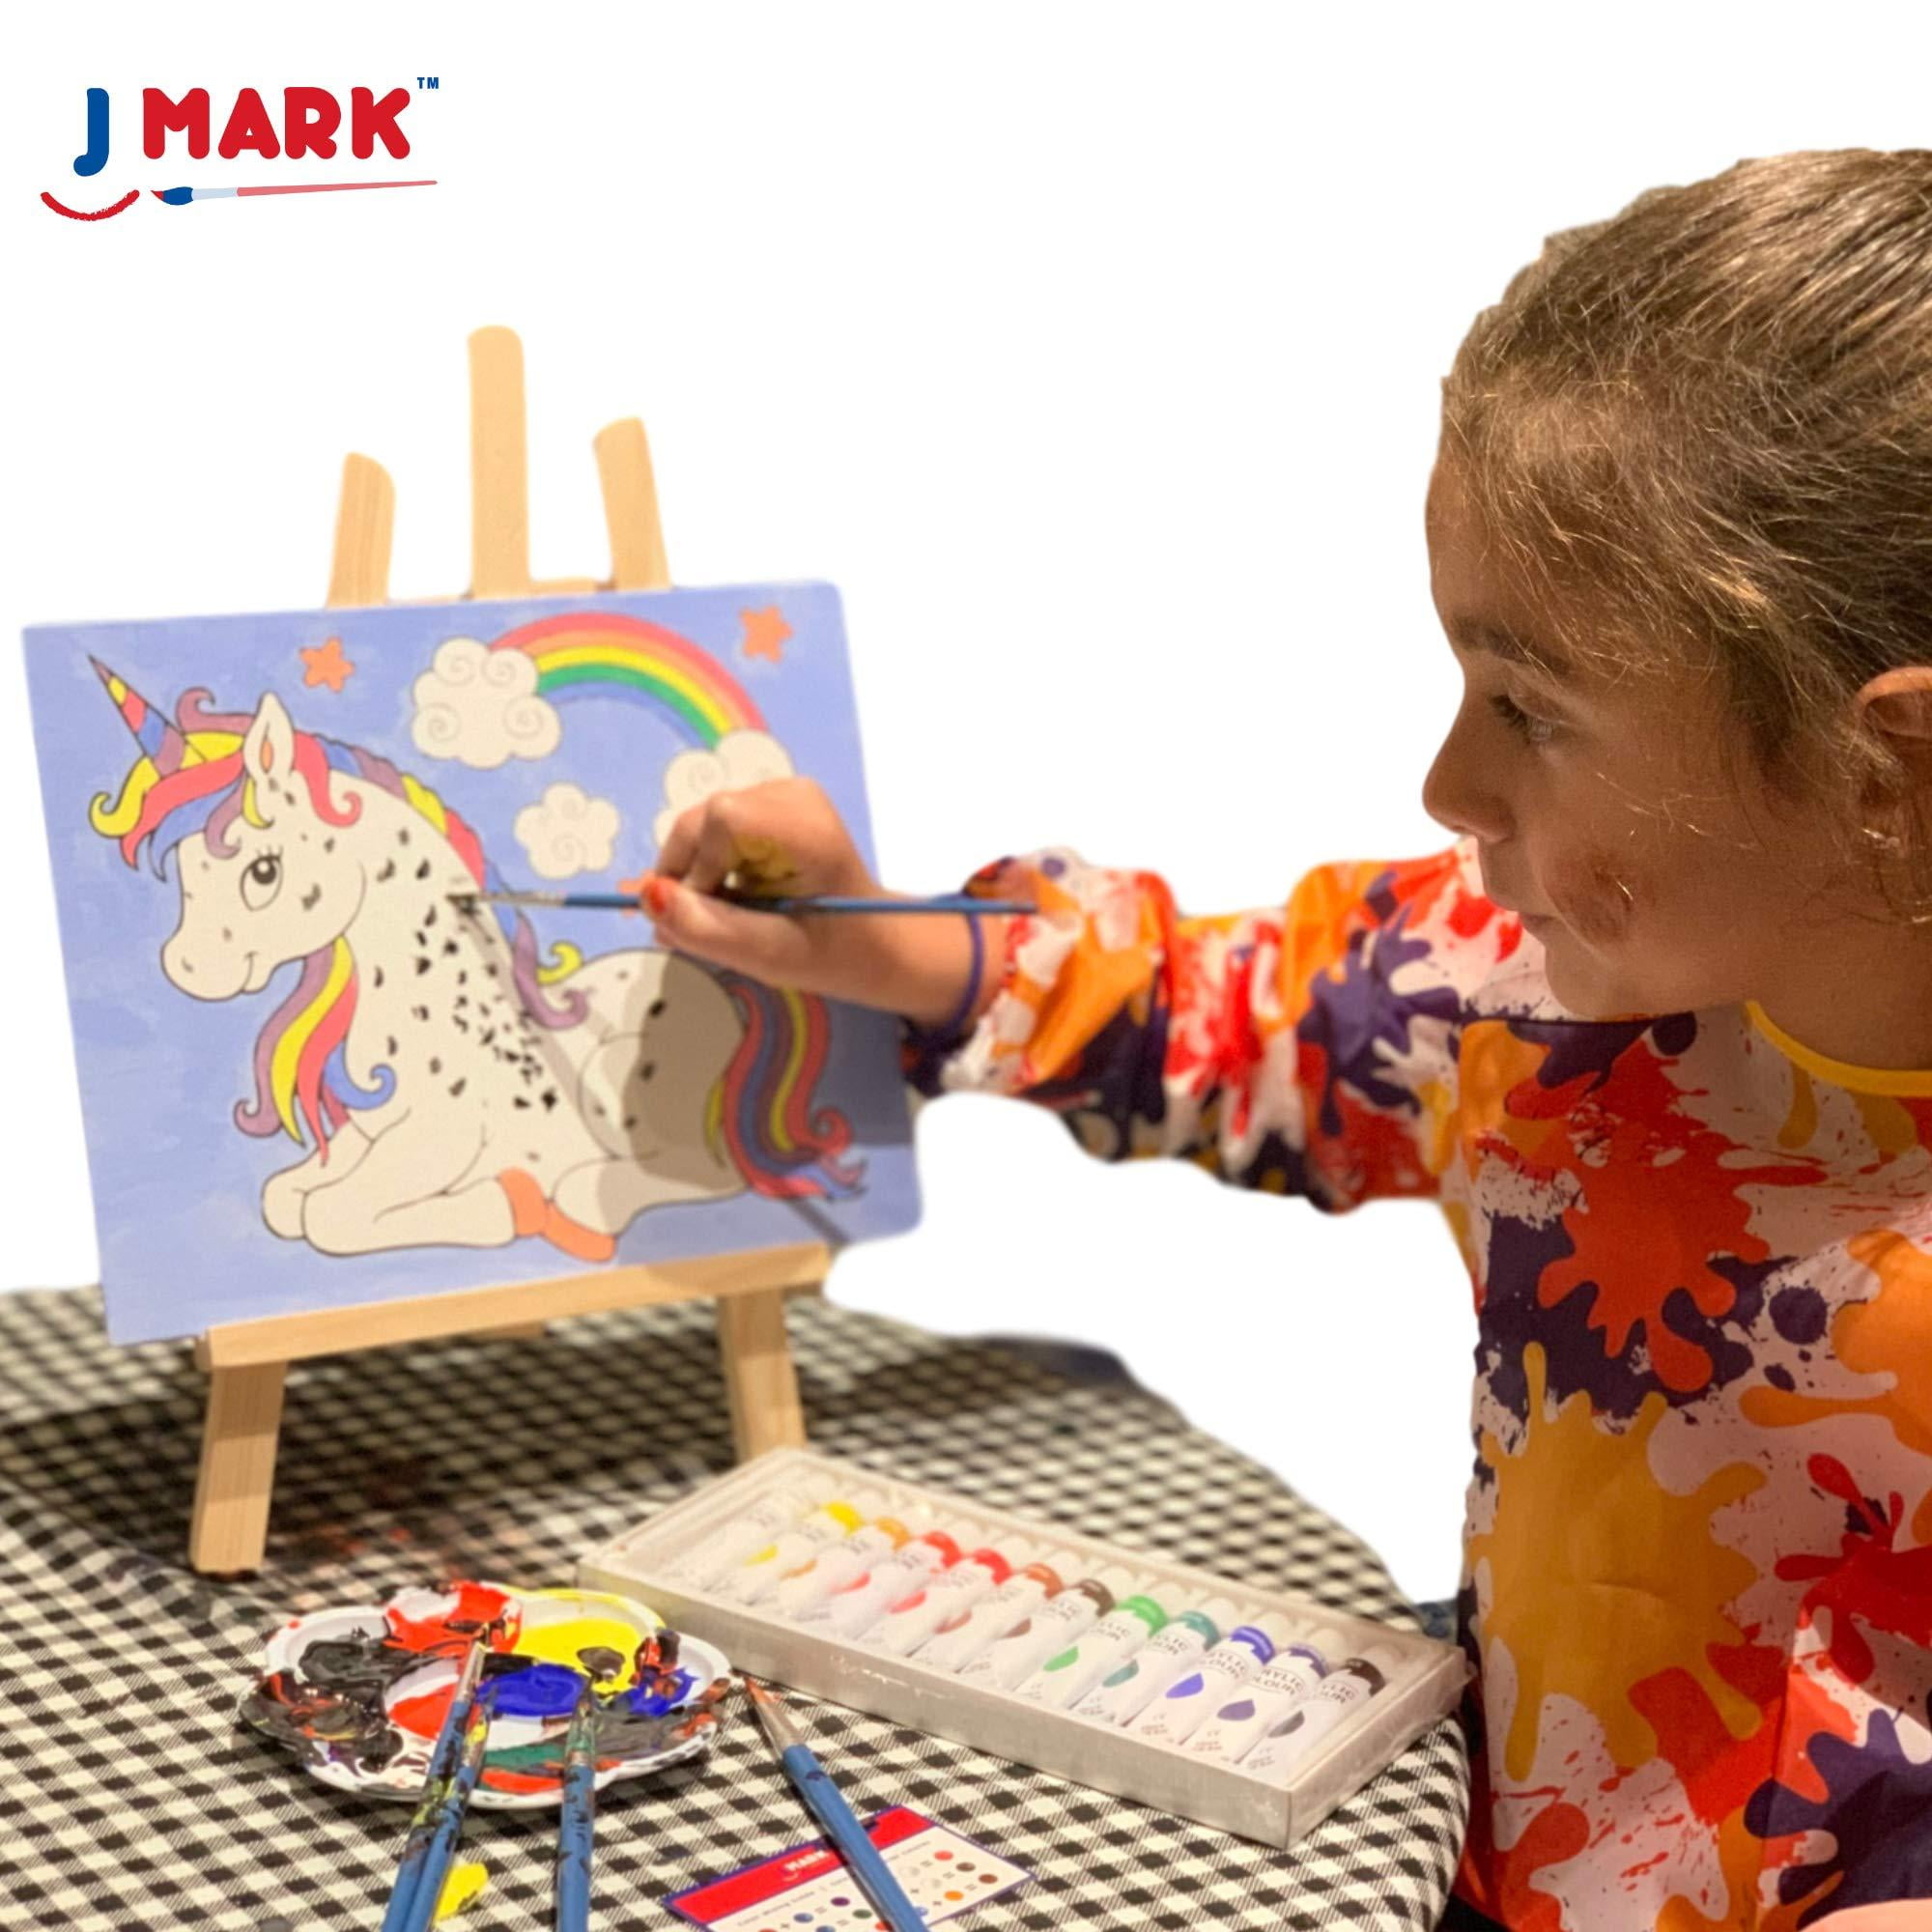 J MARK Art Canvas Paint Set Supplies – 14-Piece Mini Canvas Acrylic  Painting Kit - White - 96 requests